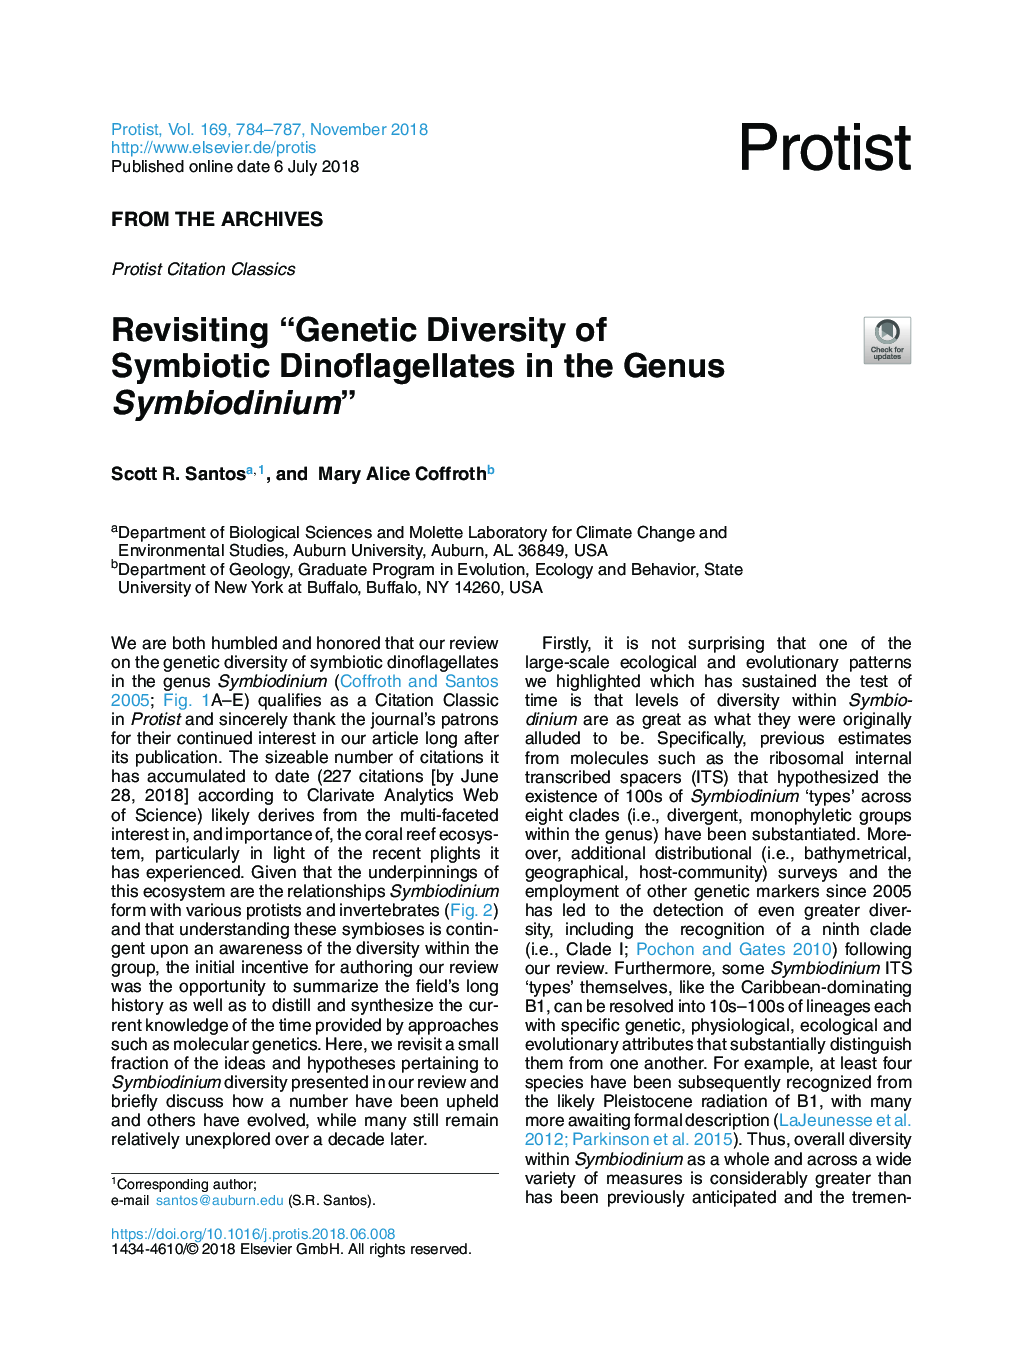 Revisiting “Genetic Diversity of Symbiotic Dinoflagellates in the Genus Symbiodinium”